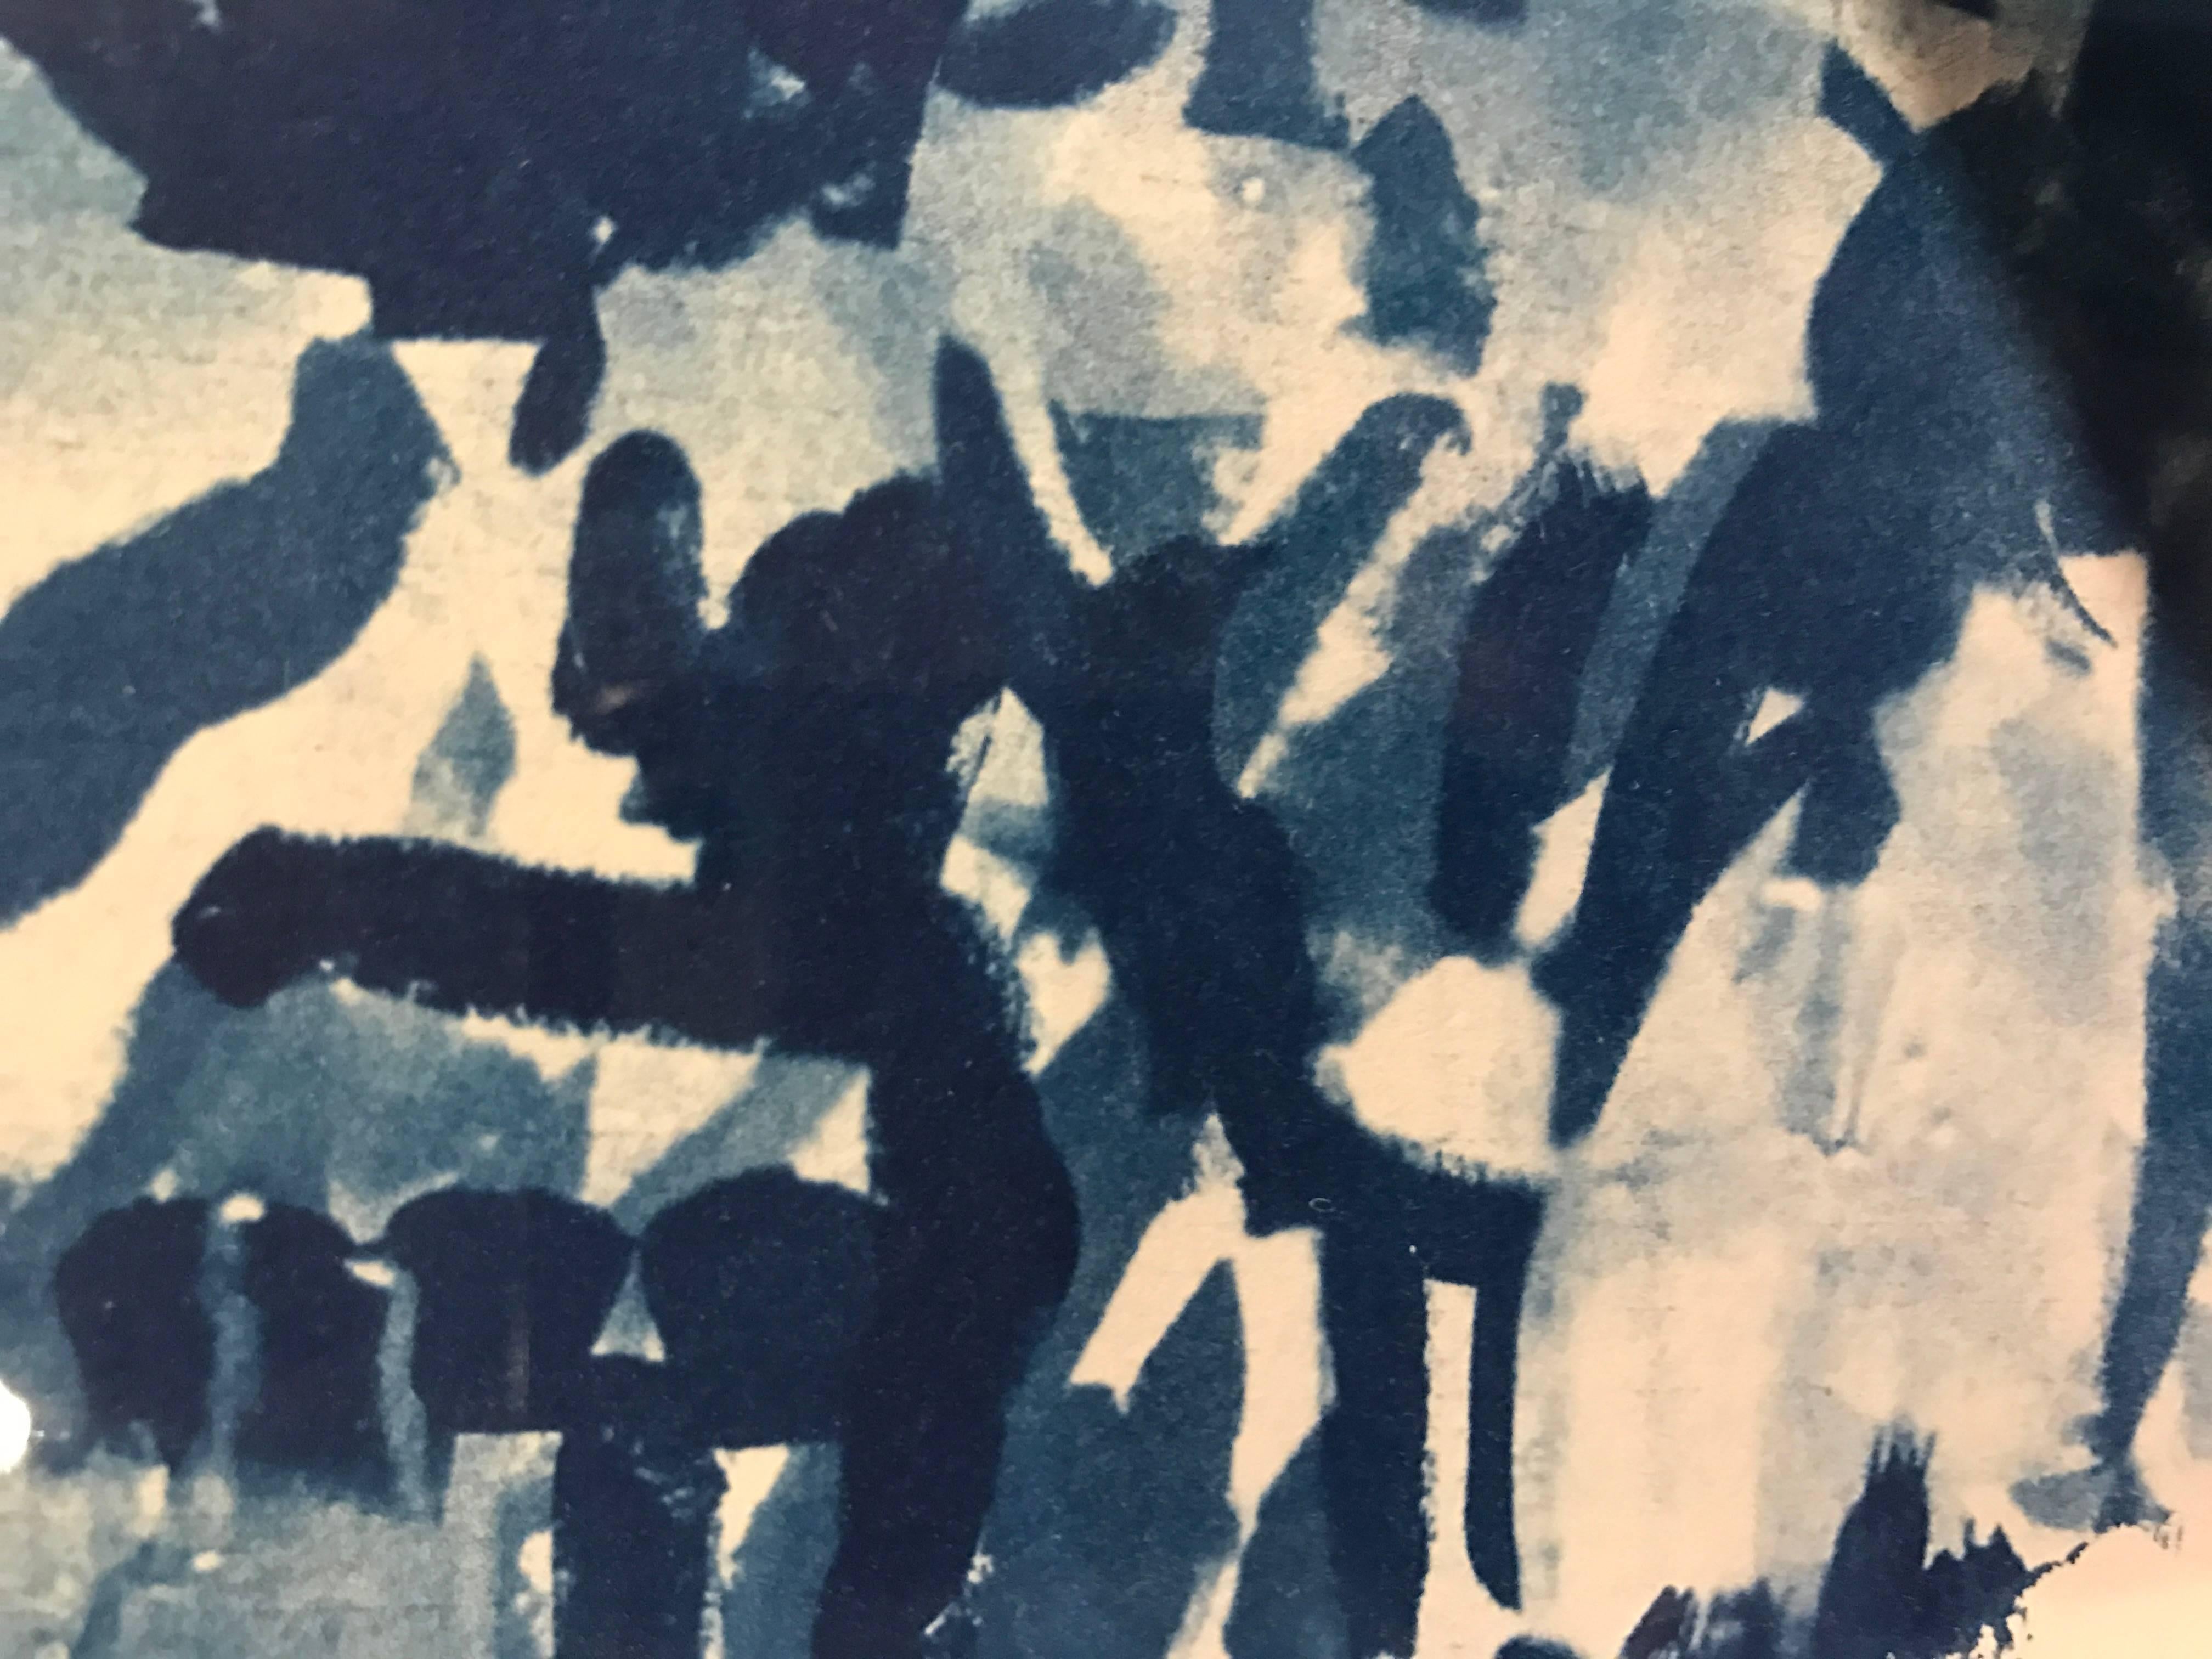 Die zeitgenössische amerikanische Künstlerin Sandra Constantine stellt die Wirkung eines alten Blaudrucks eines Architekten nach, indem sie die von dem englischen Wissenschaftler John Frederick William Herschel im Jahr 1842 entwickelte Drucktechnik